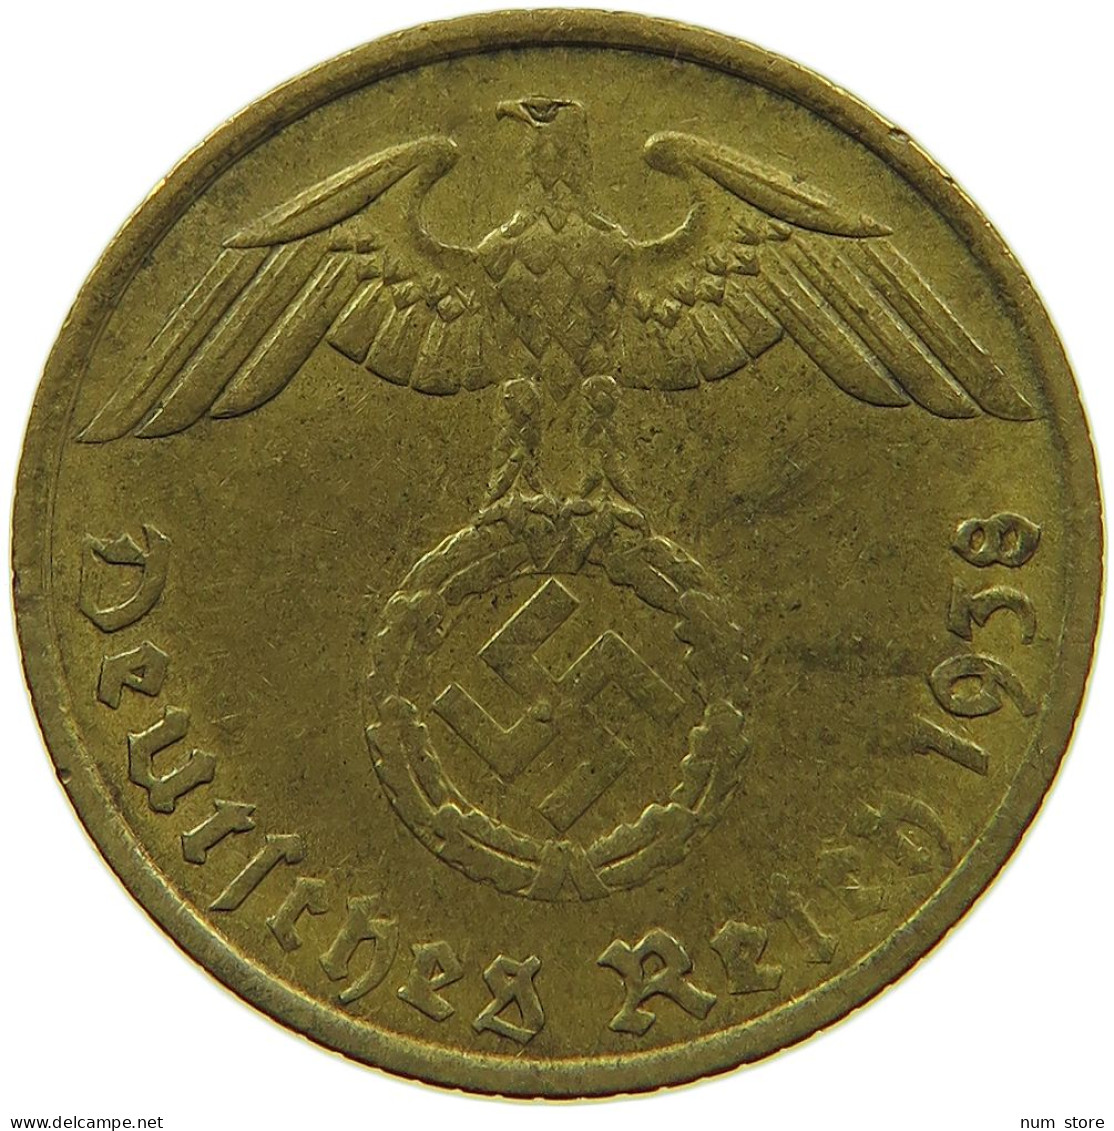 GERMANY 5 REICHSPFENNIG 1938 G #s091 0783 - 5 Reichspfennig